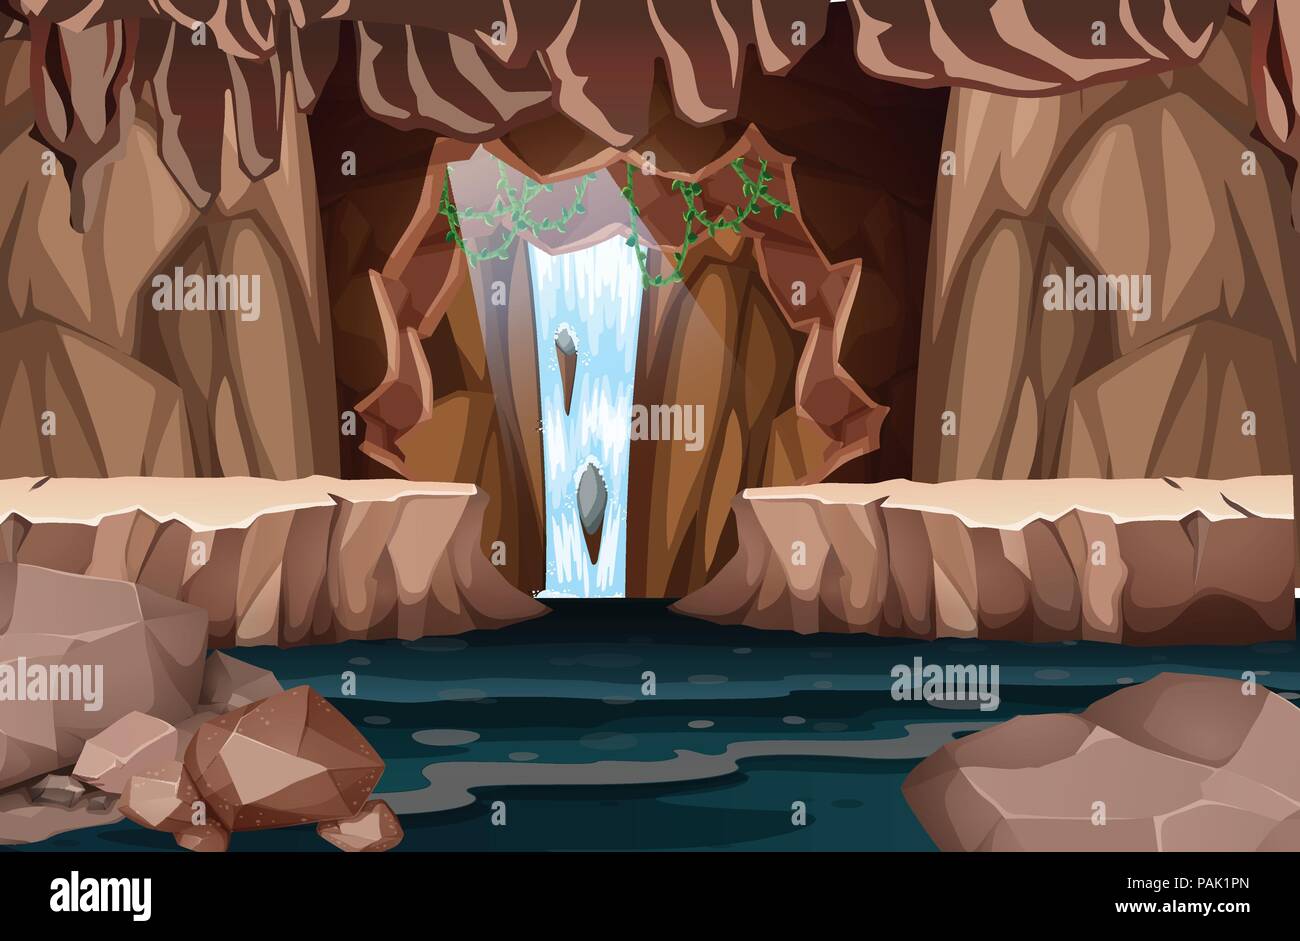 Cascade naturelle grotte illustration paysage Illustration de Vecteur